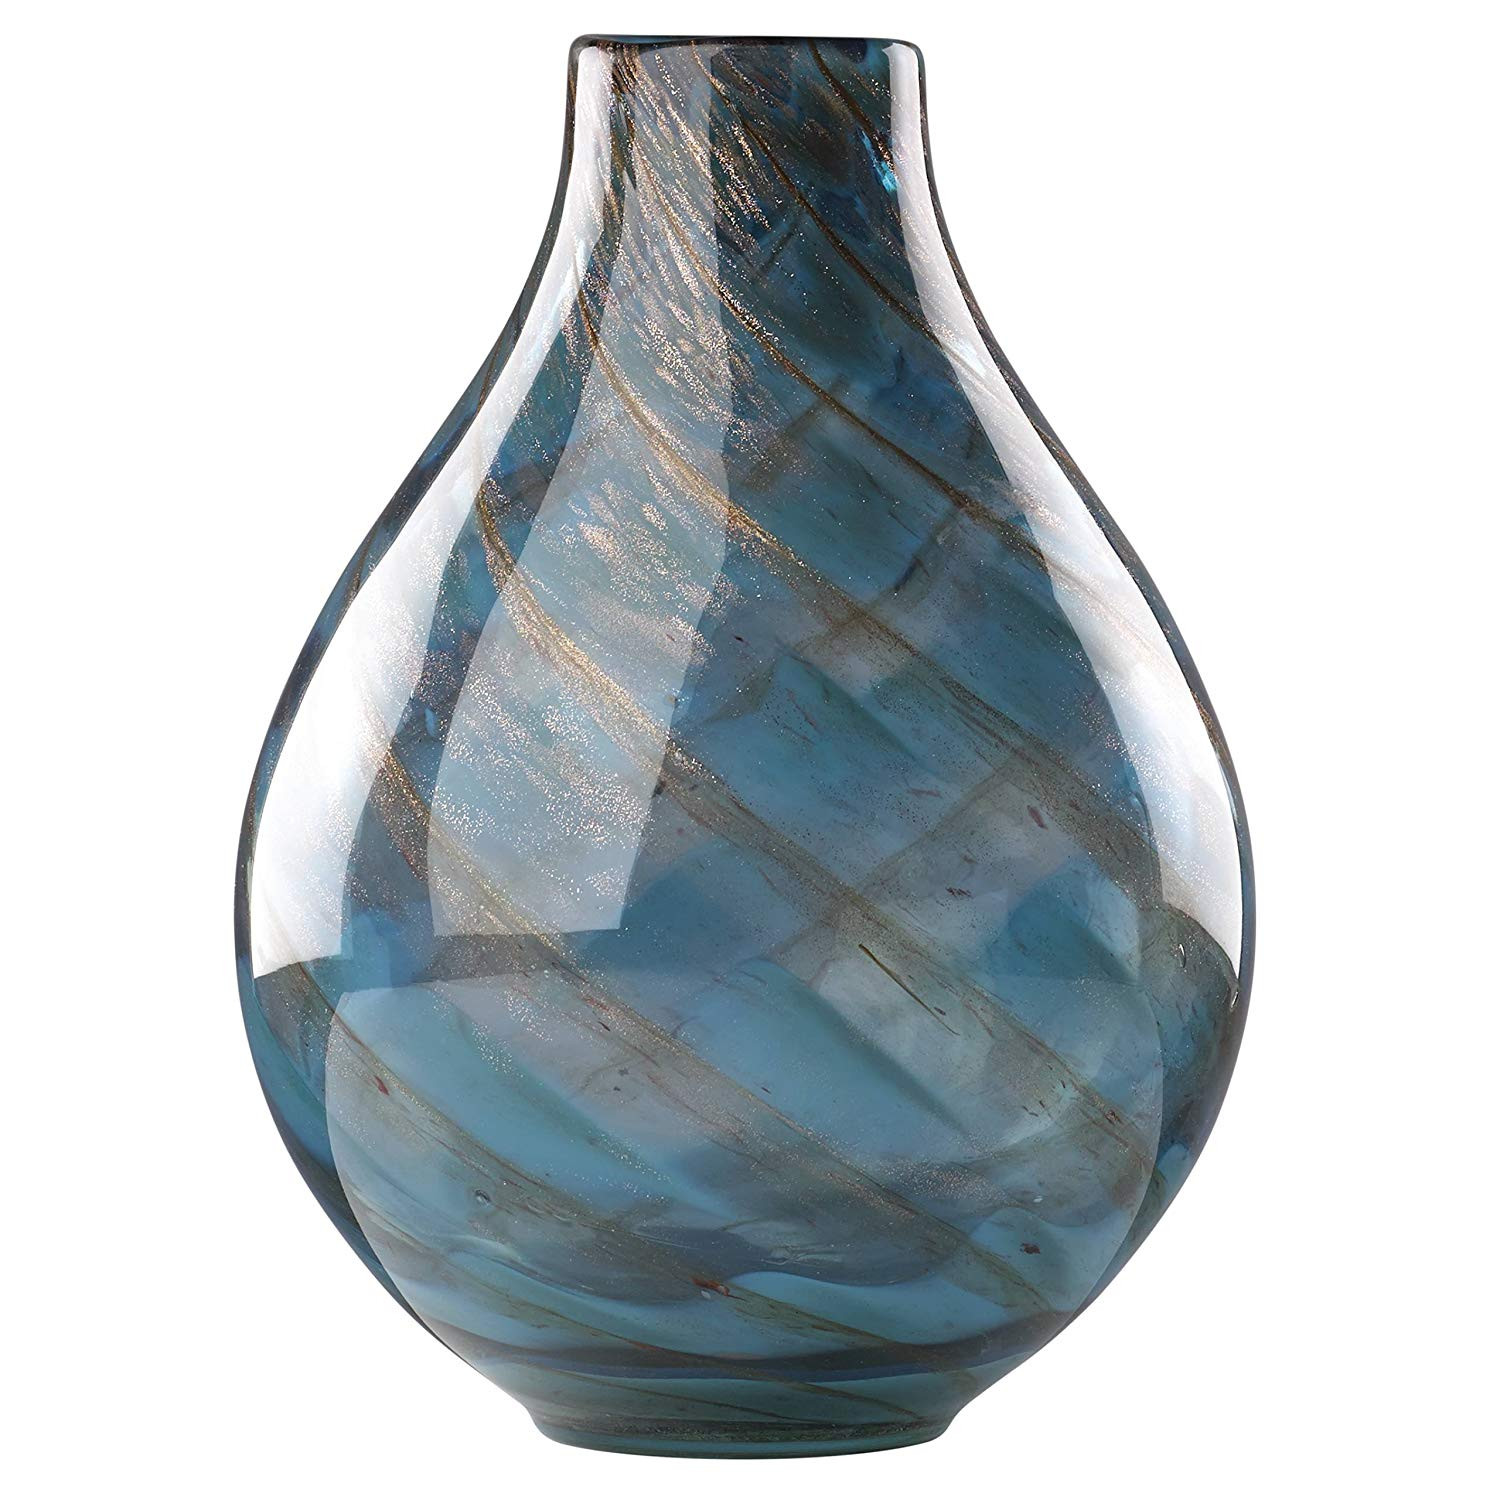 18 Wonderful Mikasa Florale 14 Inch Vase 2024 free download mikasa florale 14 inch vase of amazon com lenox 845435 seaview swirl bottle vase home kitchen in 91w genb88l sl1500